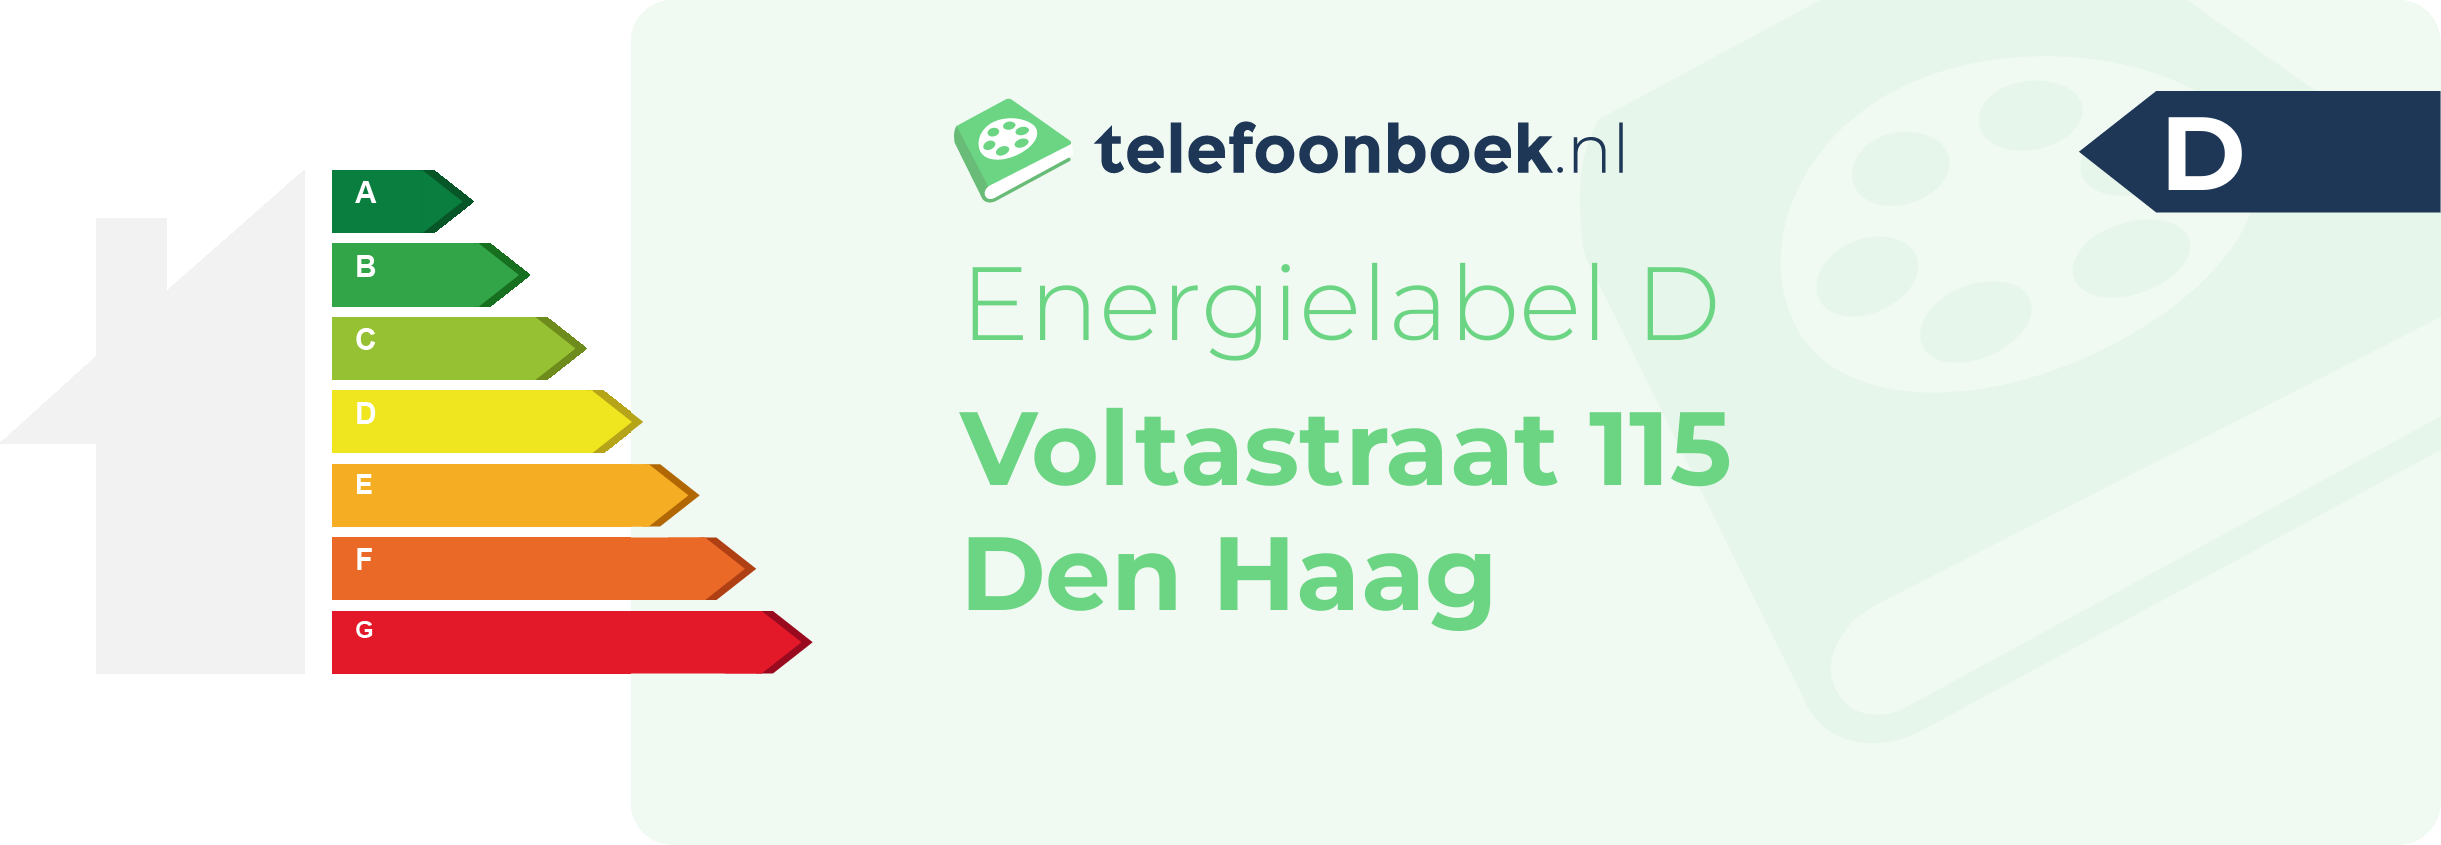 Energielabel Voltastraat 115 Den Haag